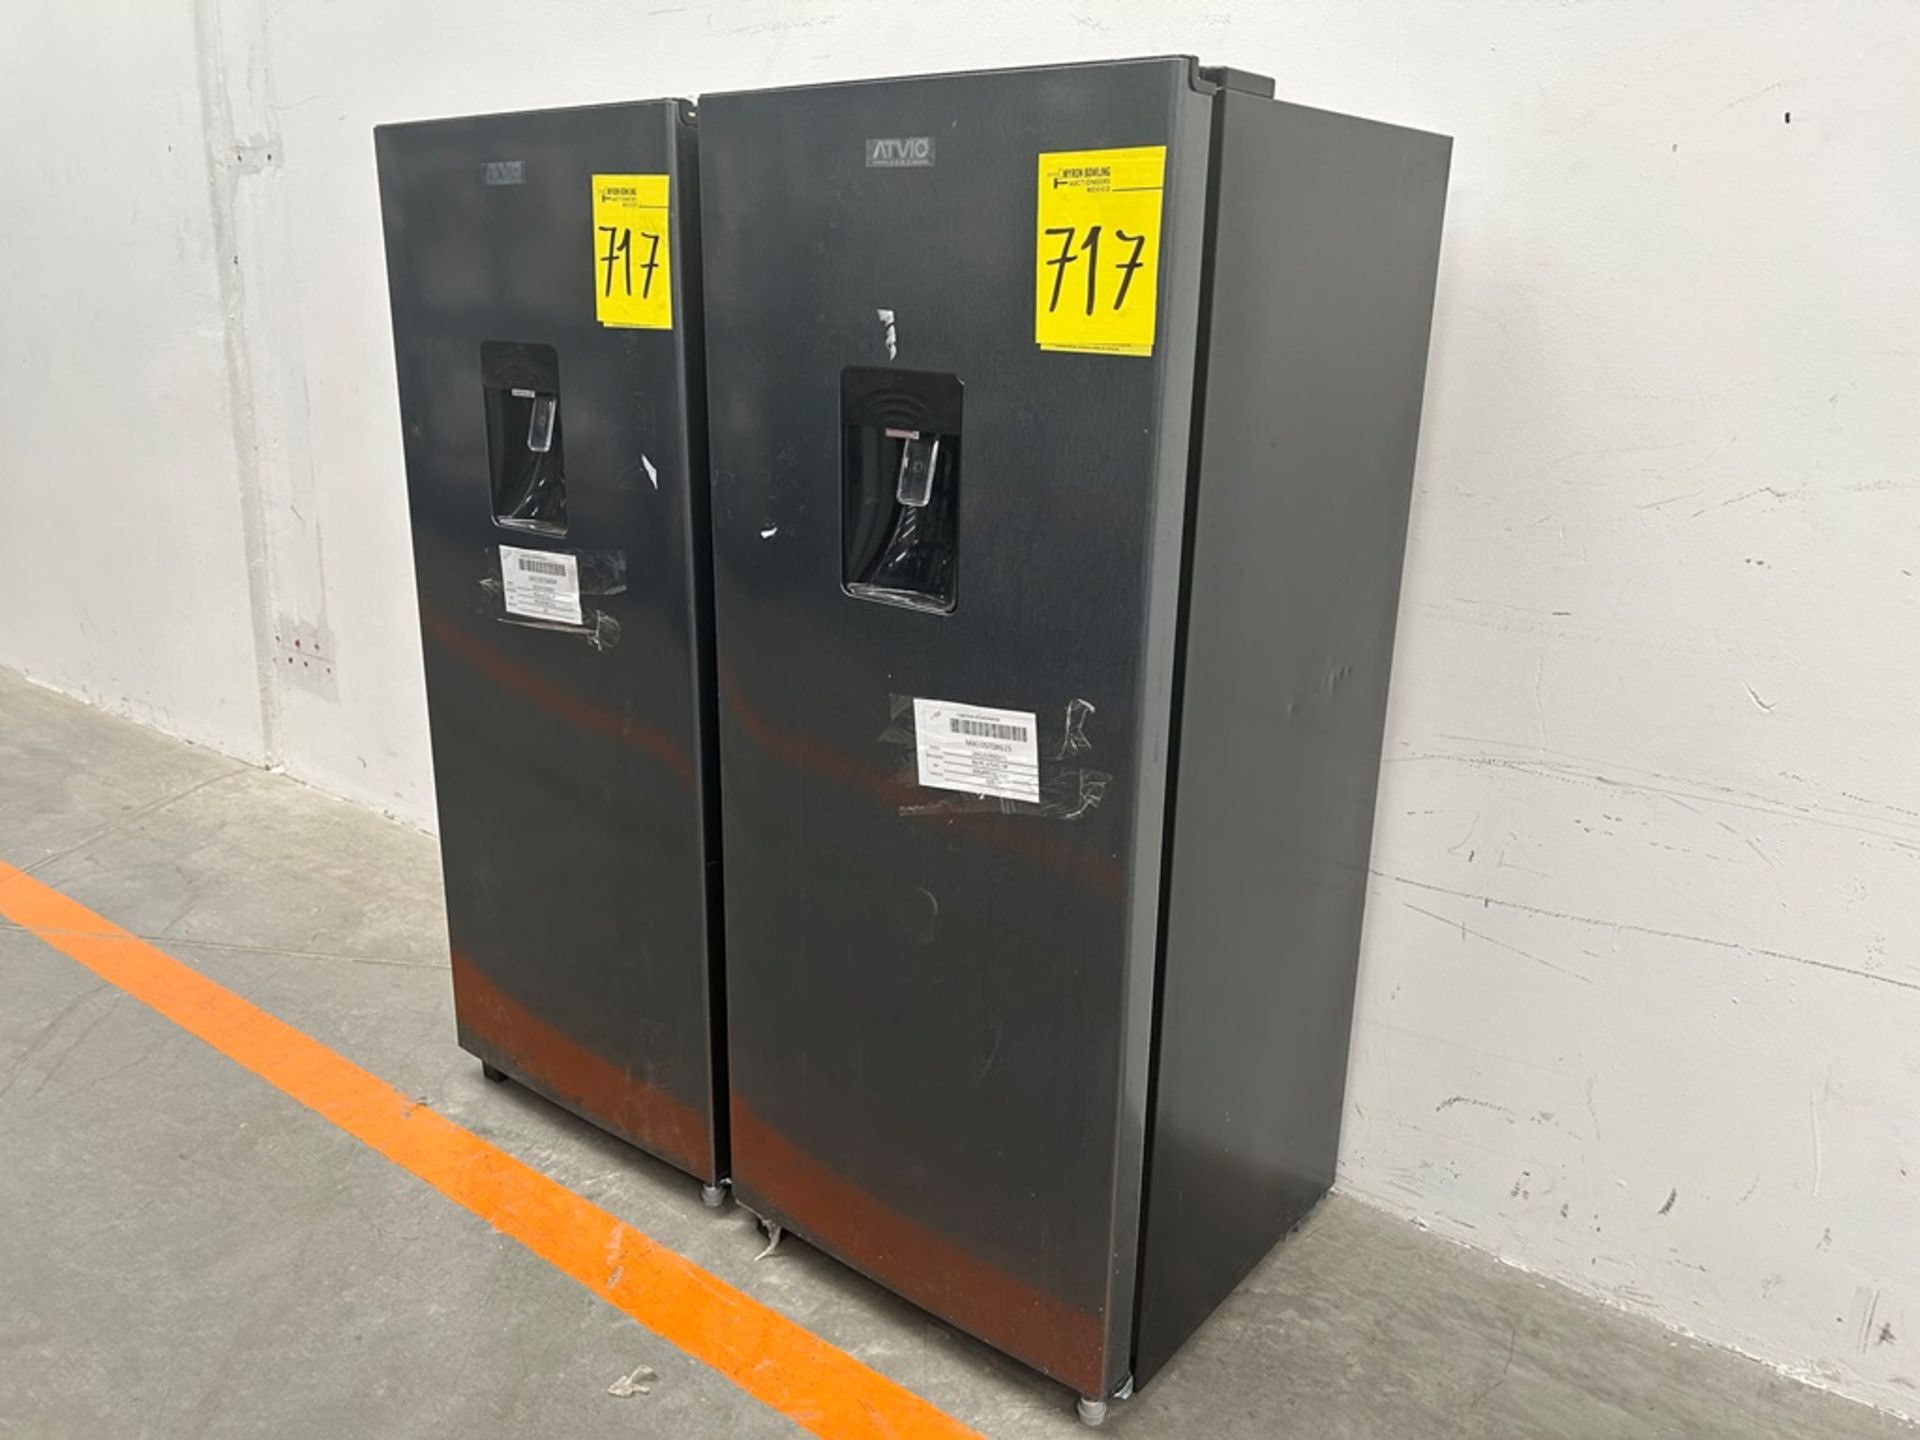 Lote de 2 refrigeradores contiene: 1 refrigerador con dispensador de agua Marca ATVIO, Modelo AT66U - Image 2 of 20